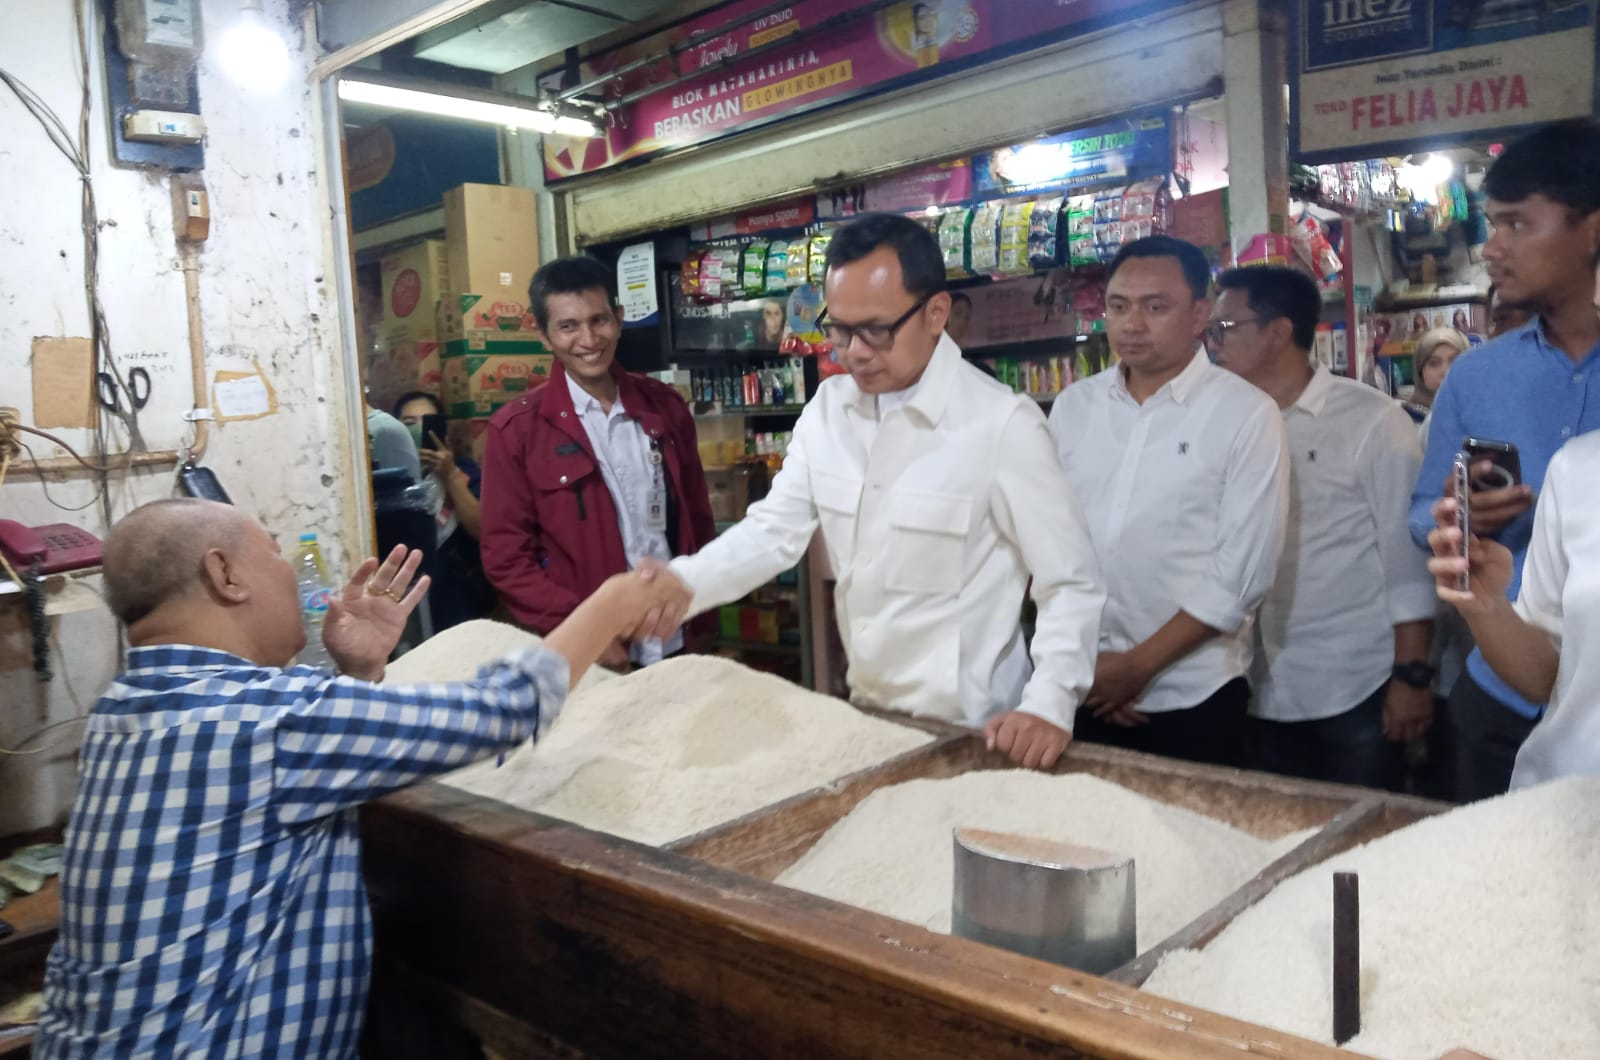 CEK HARGA BERAS: Wali Kota Bogor, Bima Arya saat meninjau sejumlah pedagang beras di Pasar Kebon Kembang, Kecamatan Bogor Tengah, Rabu (21/2).